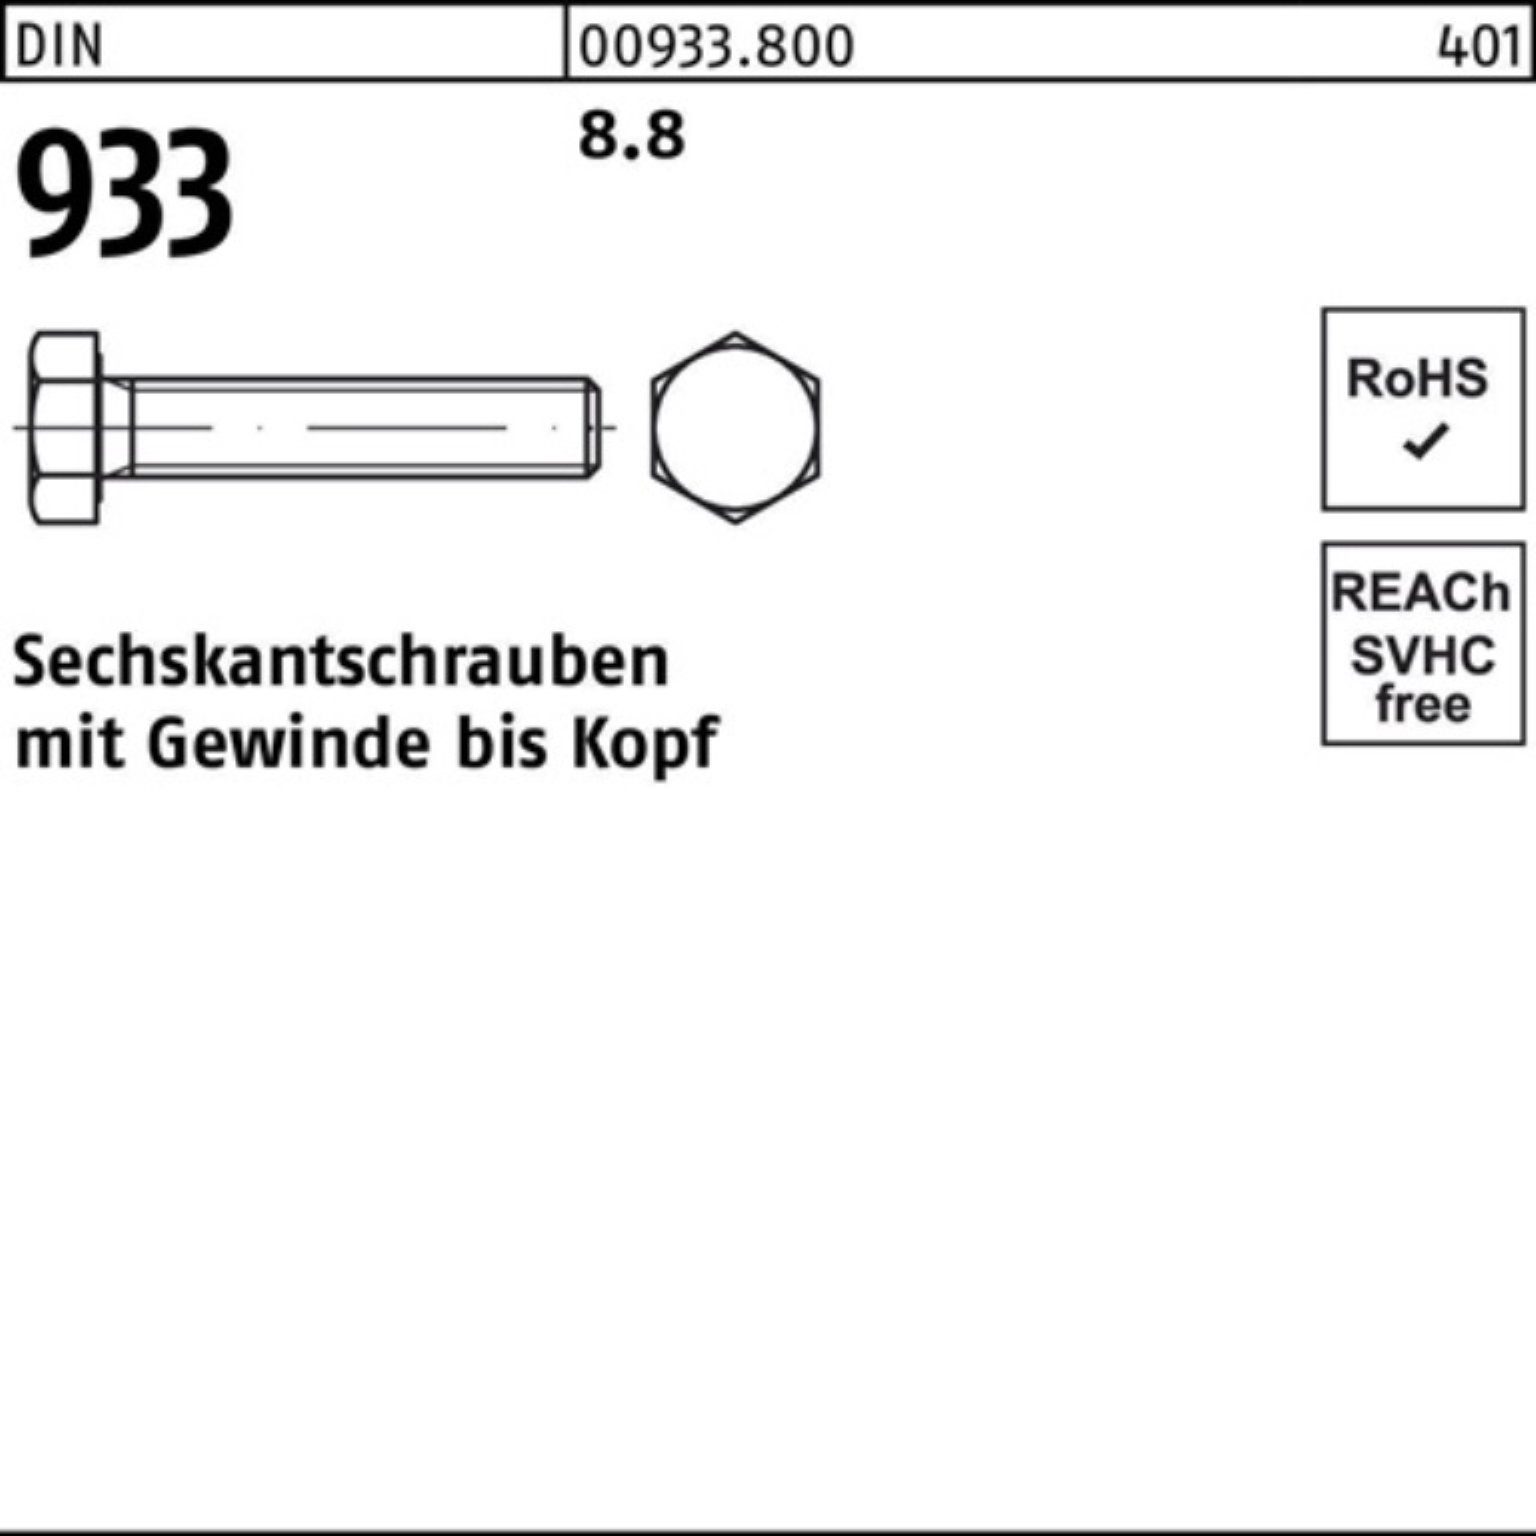 Reyher Sechskantschraube 100er Pack VG 933 8.8 933 Sechskantschraube DIN 180 Stück M20x 1 DIN